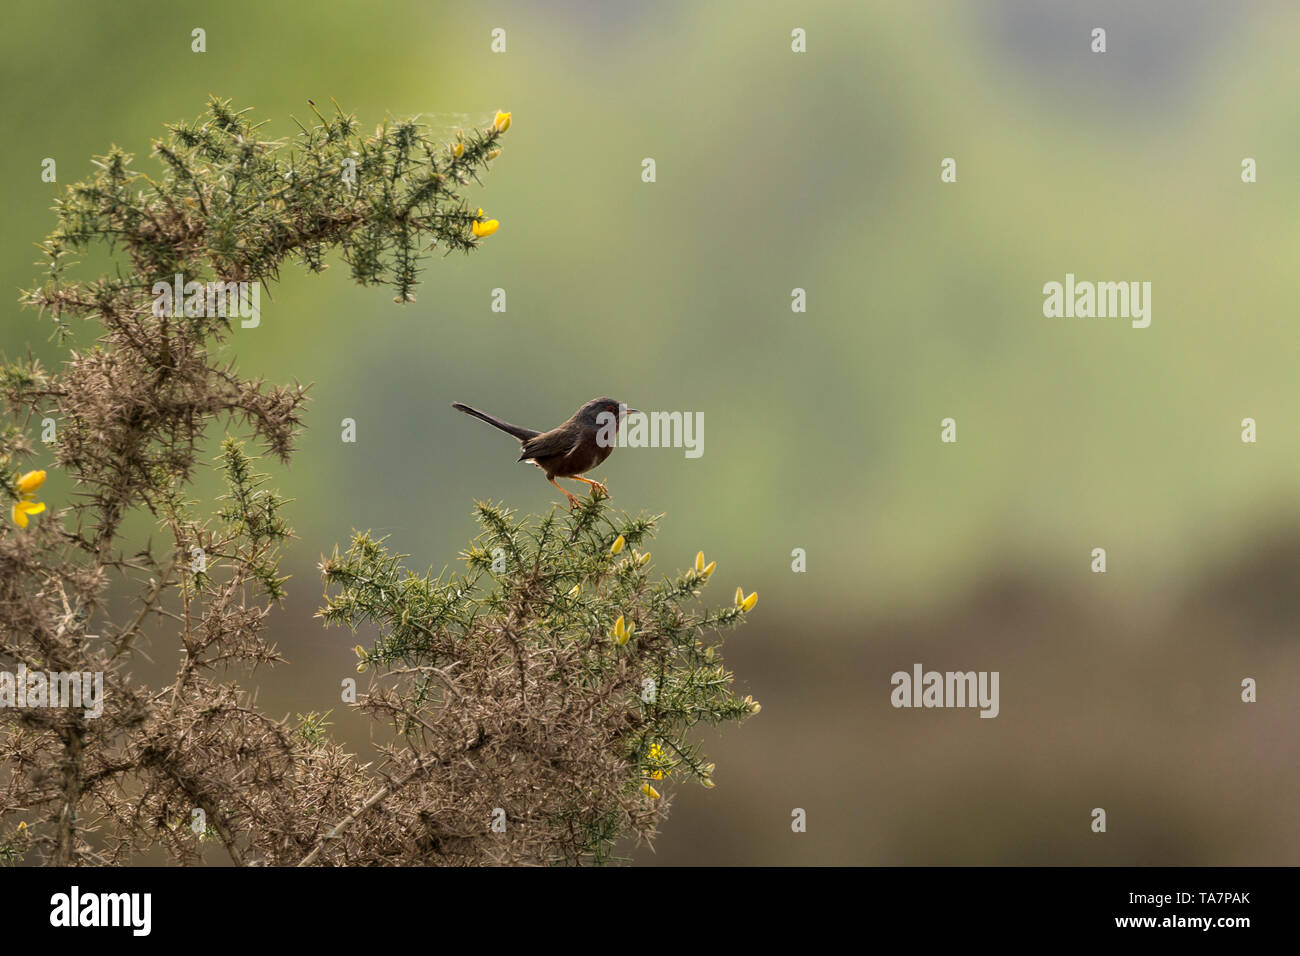 Dartford warbler (Sylvia undata) en saison de reproduction sur la réserve naturelle de Thursley UK. Perché sur un buisson d'ajoncs un oiseau noir avec longue queue étirée à l'angle Banque D'Images